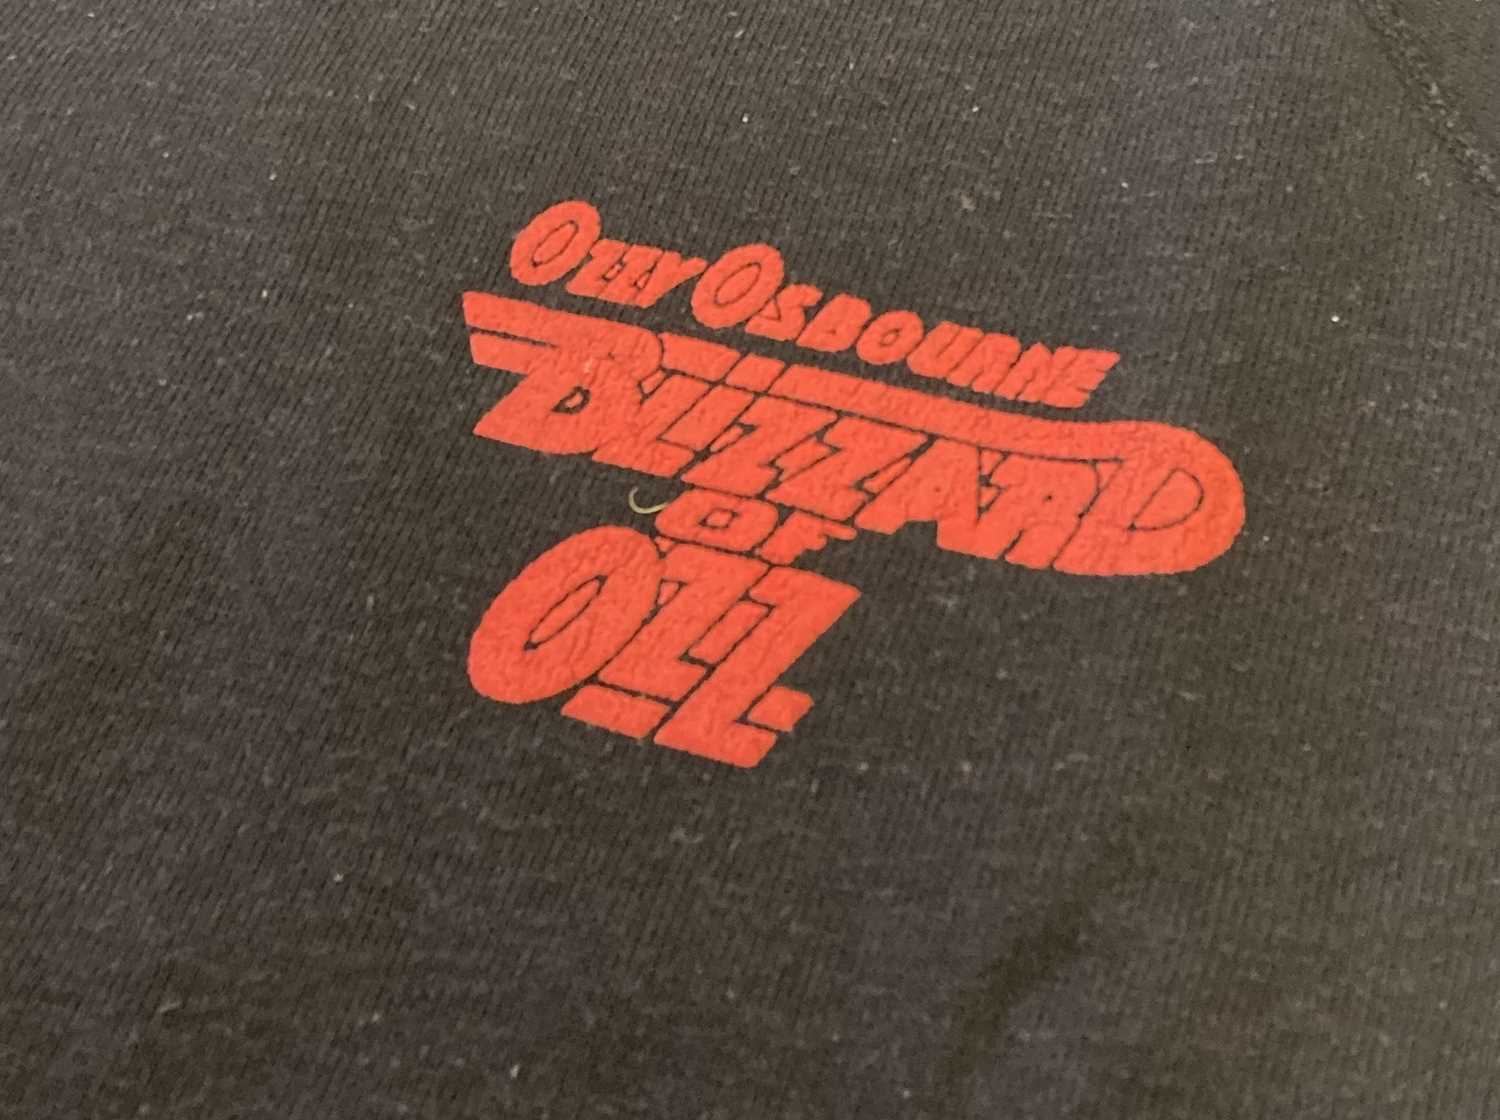 1980S OZZY OSBOURNE TOUR CLOTHING - Image 3 of 5